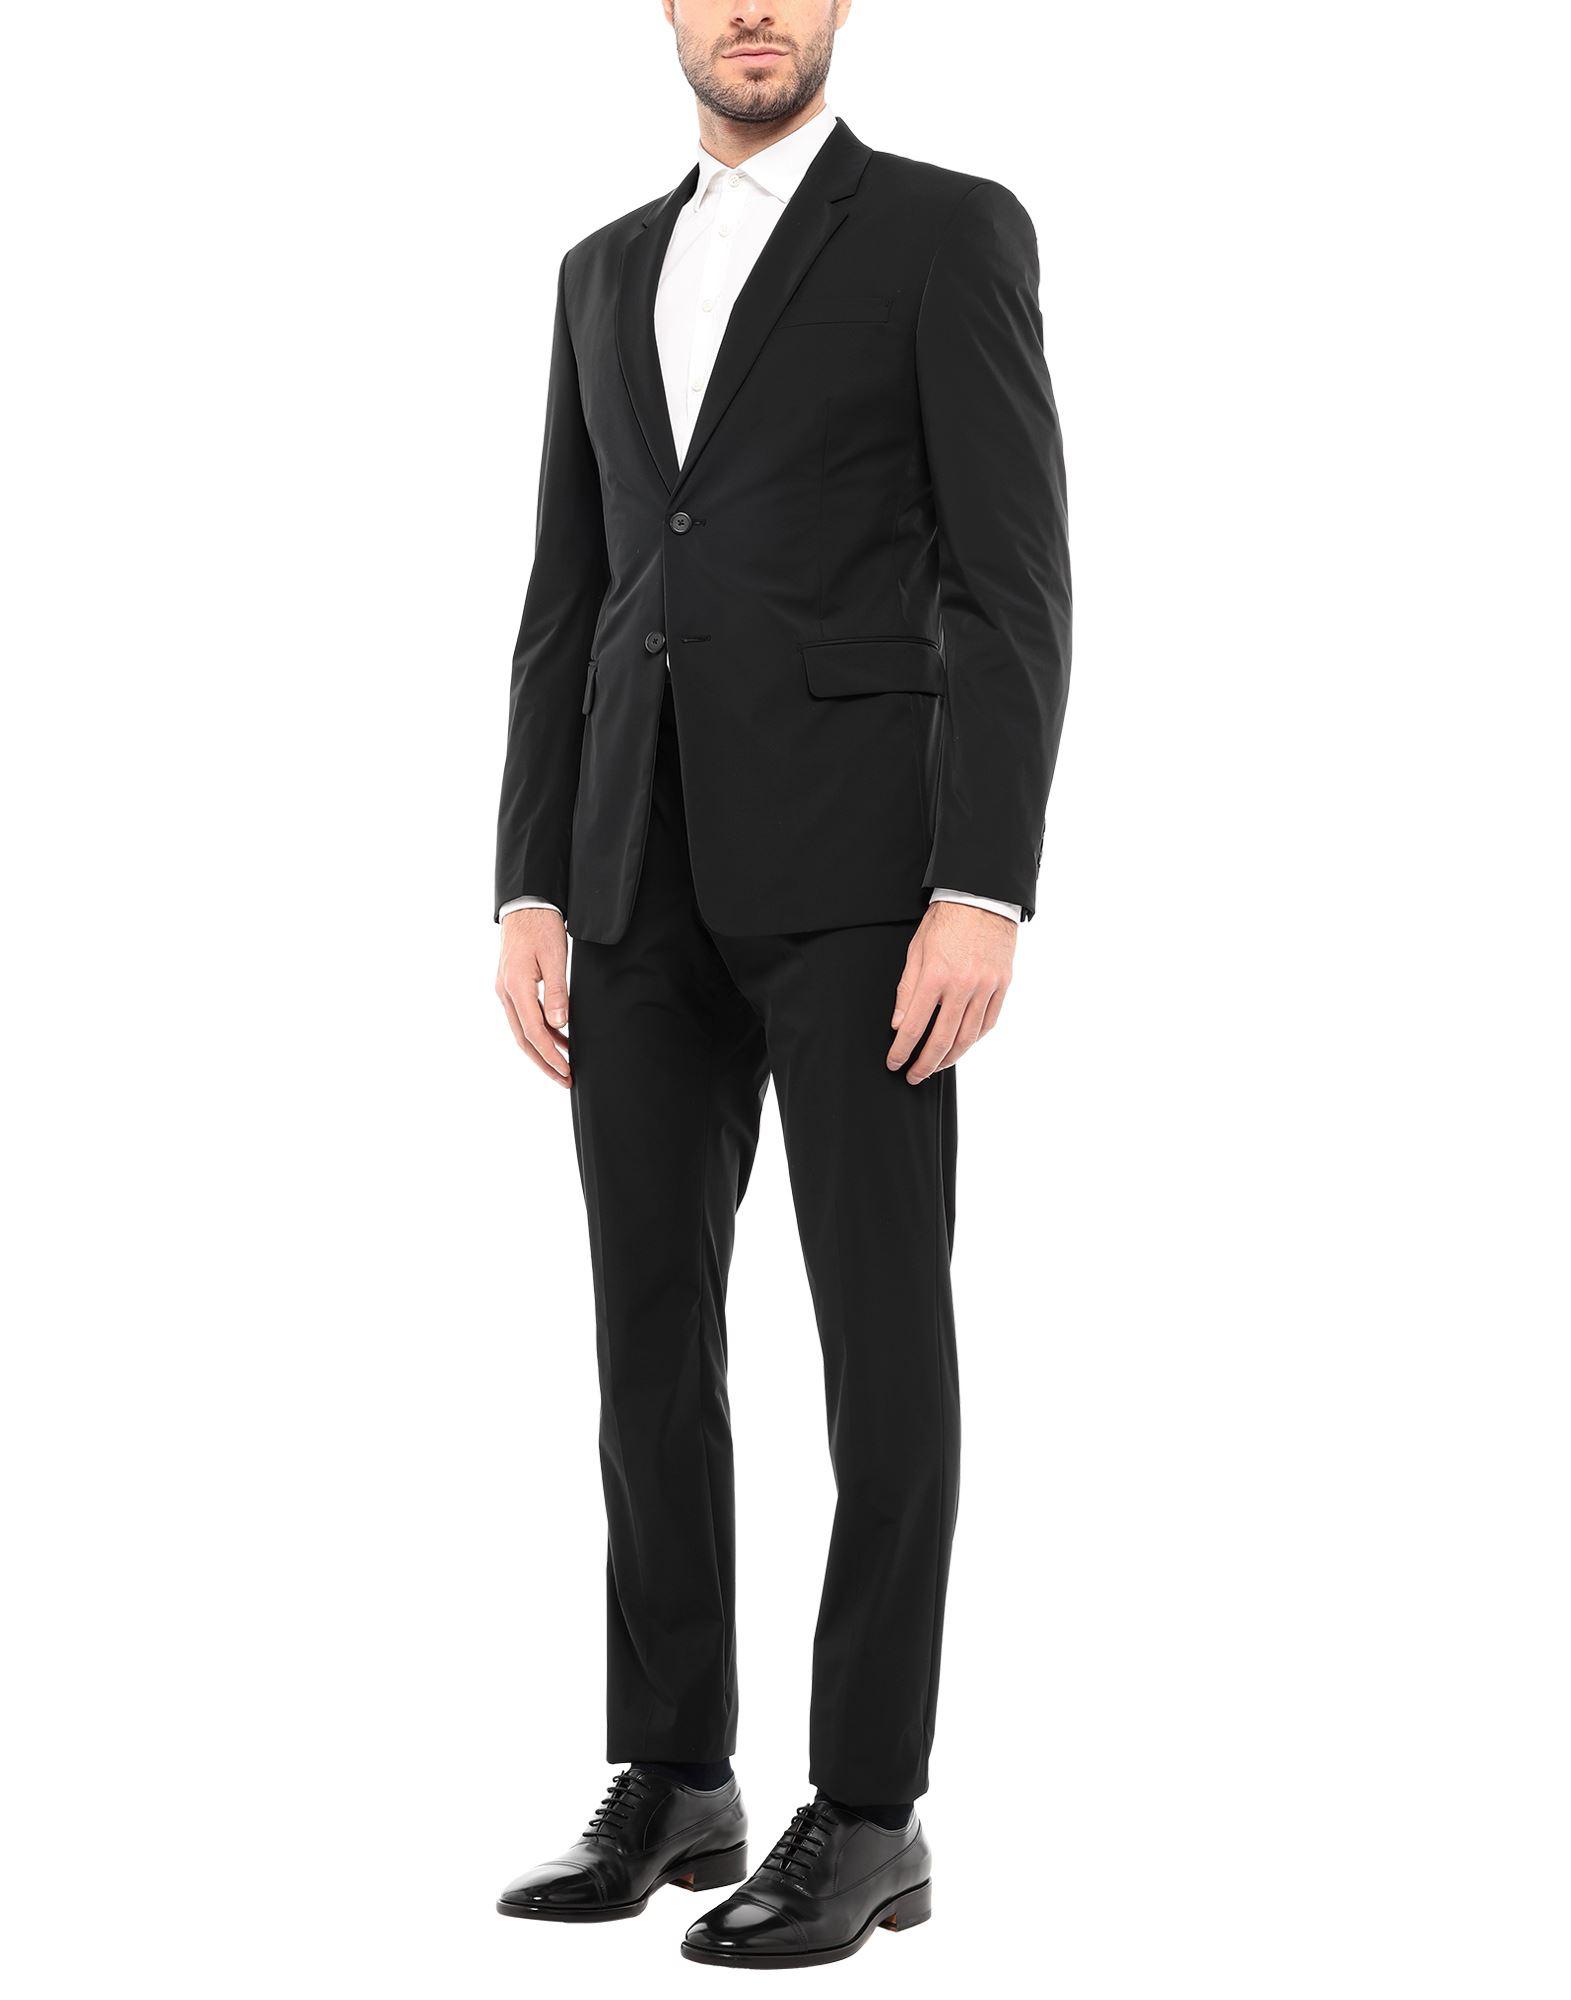 prada black suit Off 78% - www.loverethymno.com